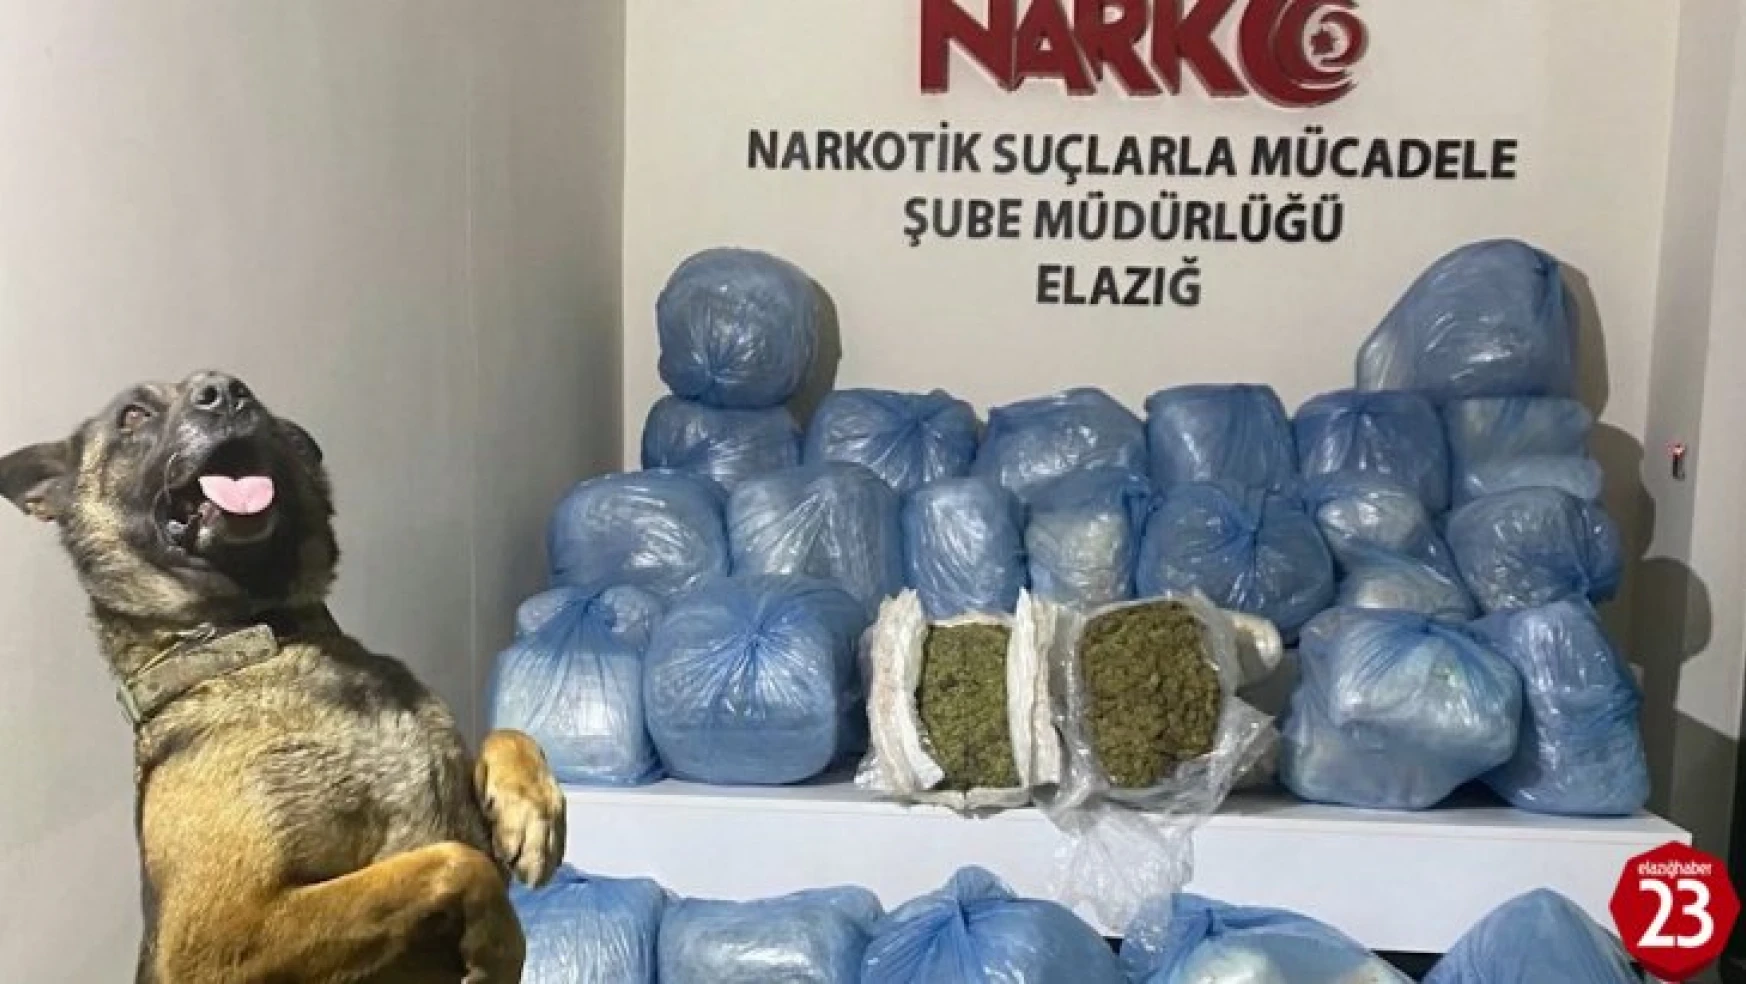 Elazığ'da 123 Kilo Uyuşturucu Madde Ele Geçirildi, 11 Kişi Tutuklandı